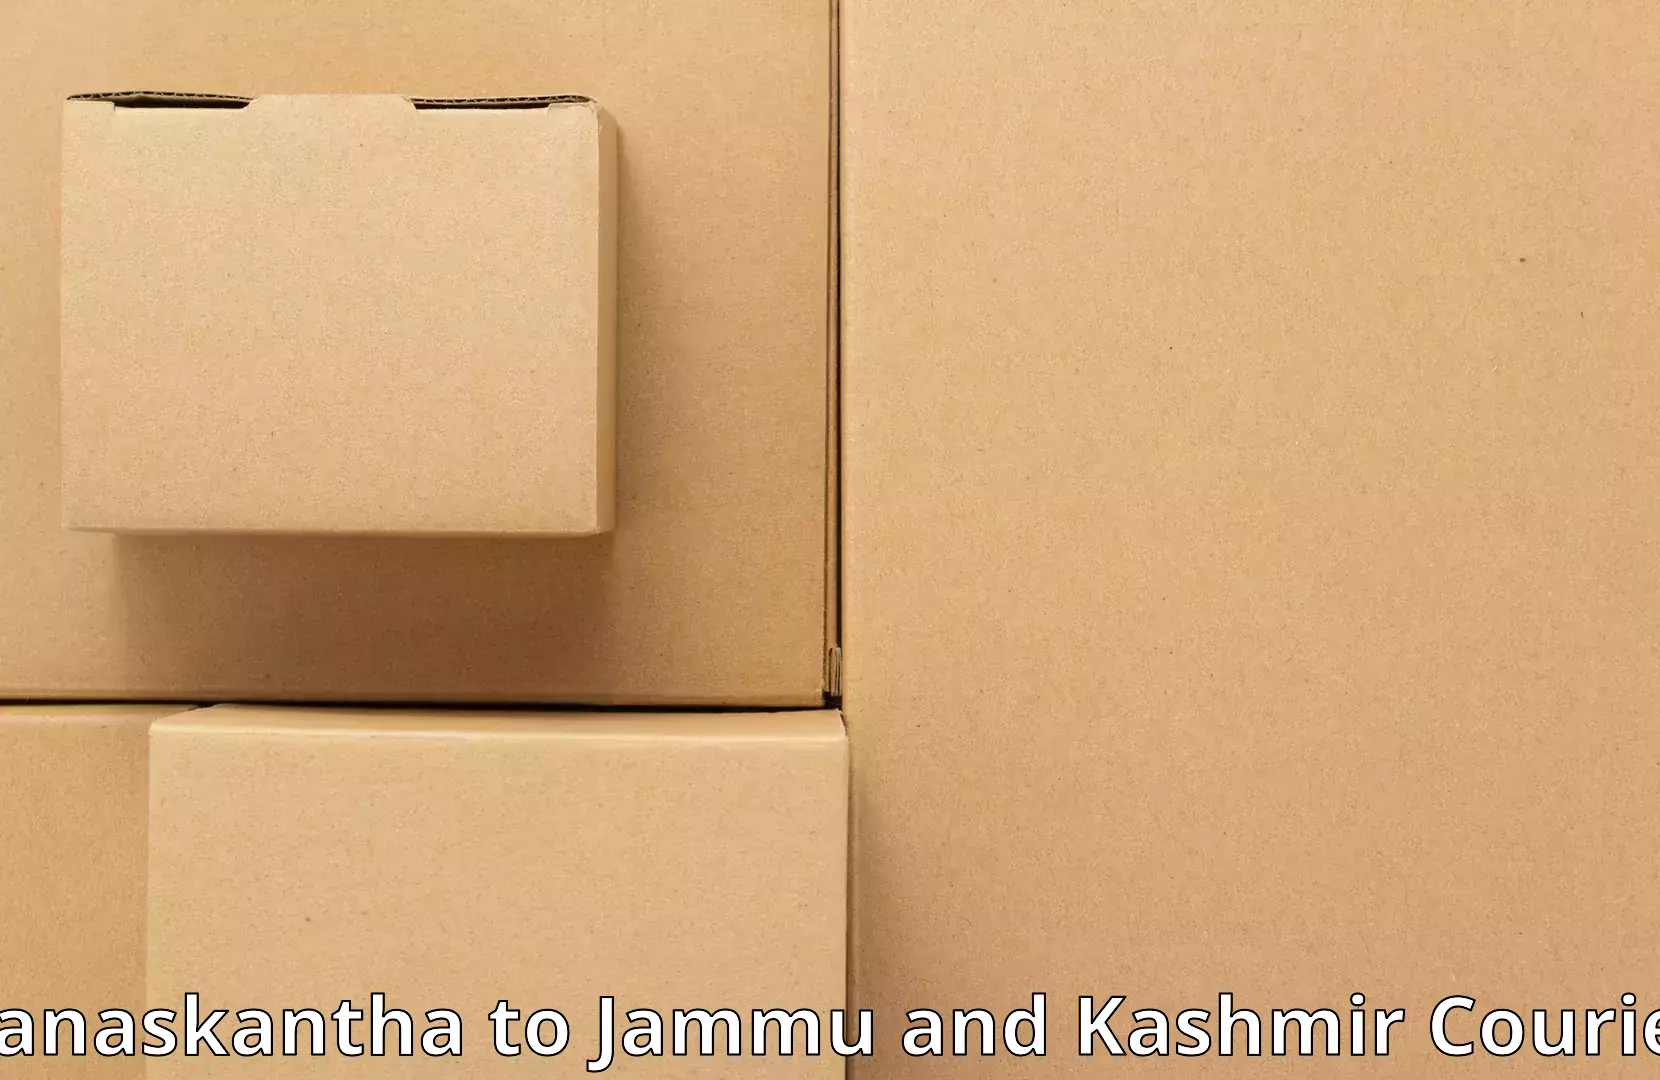 Efficient moving and packing Banaskantha to Katra